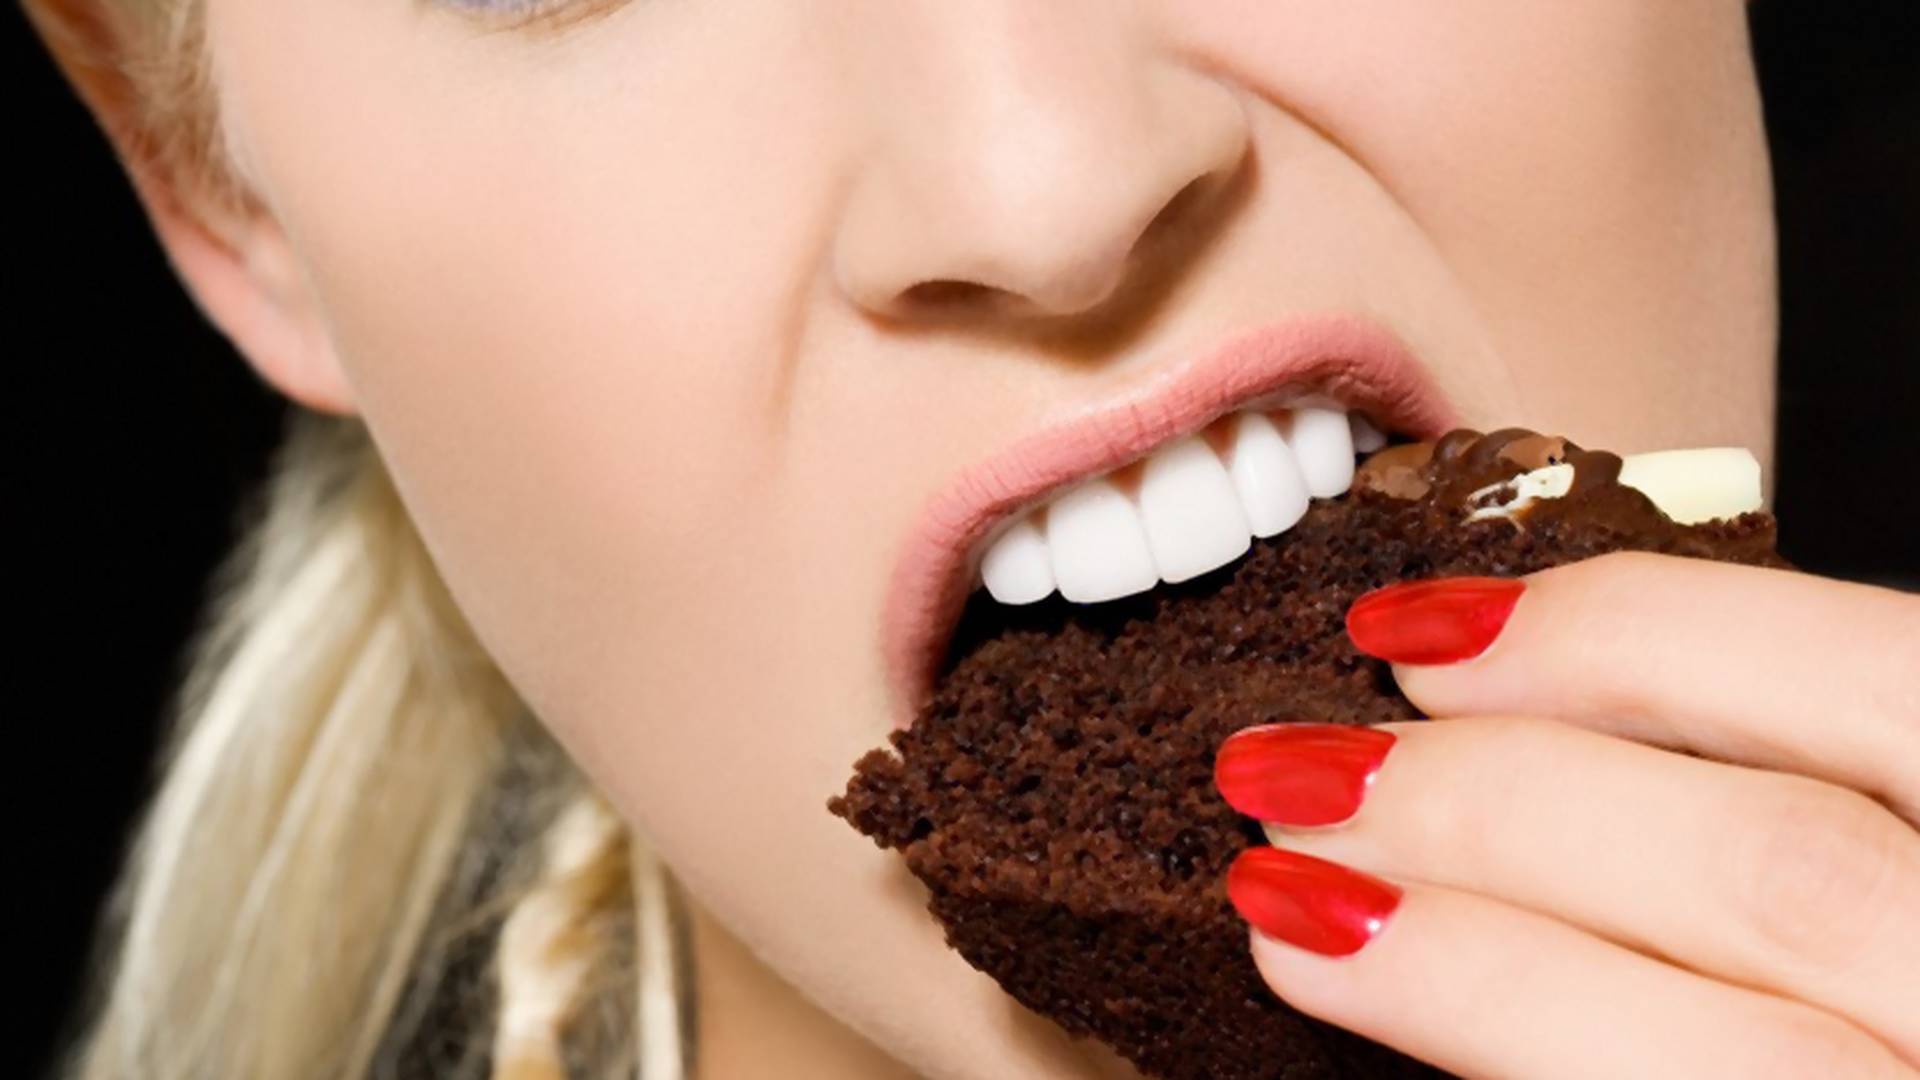 Trik uz koji možete da uživate u slatkišima i dok ste na dijeti